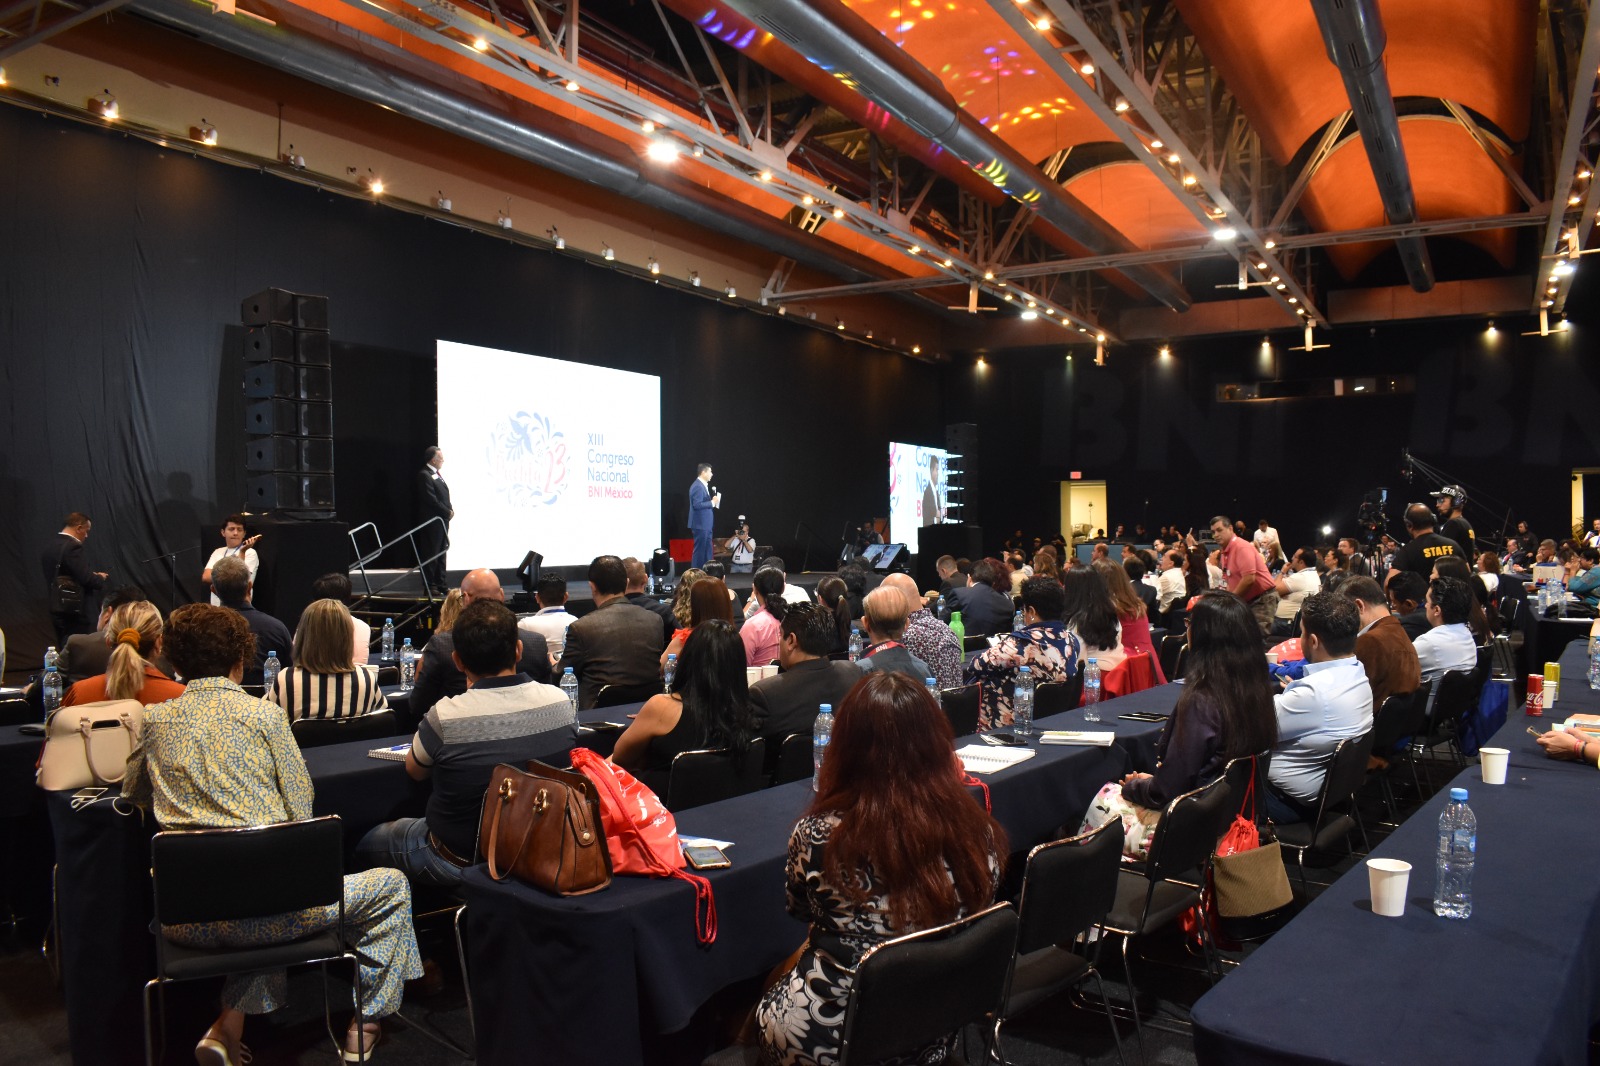 En aumento, el turismo de congresos y reuniones en Puebla capital